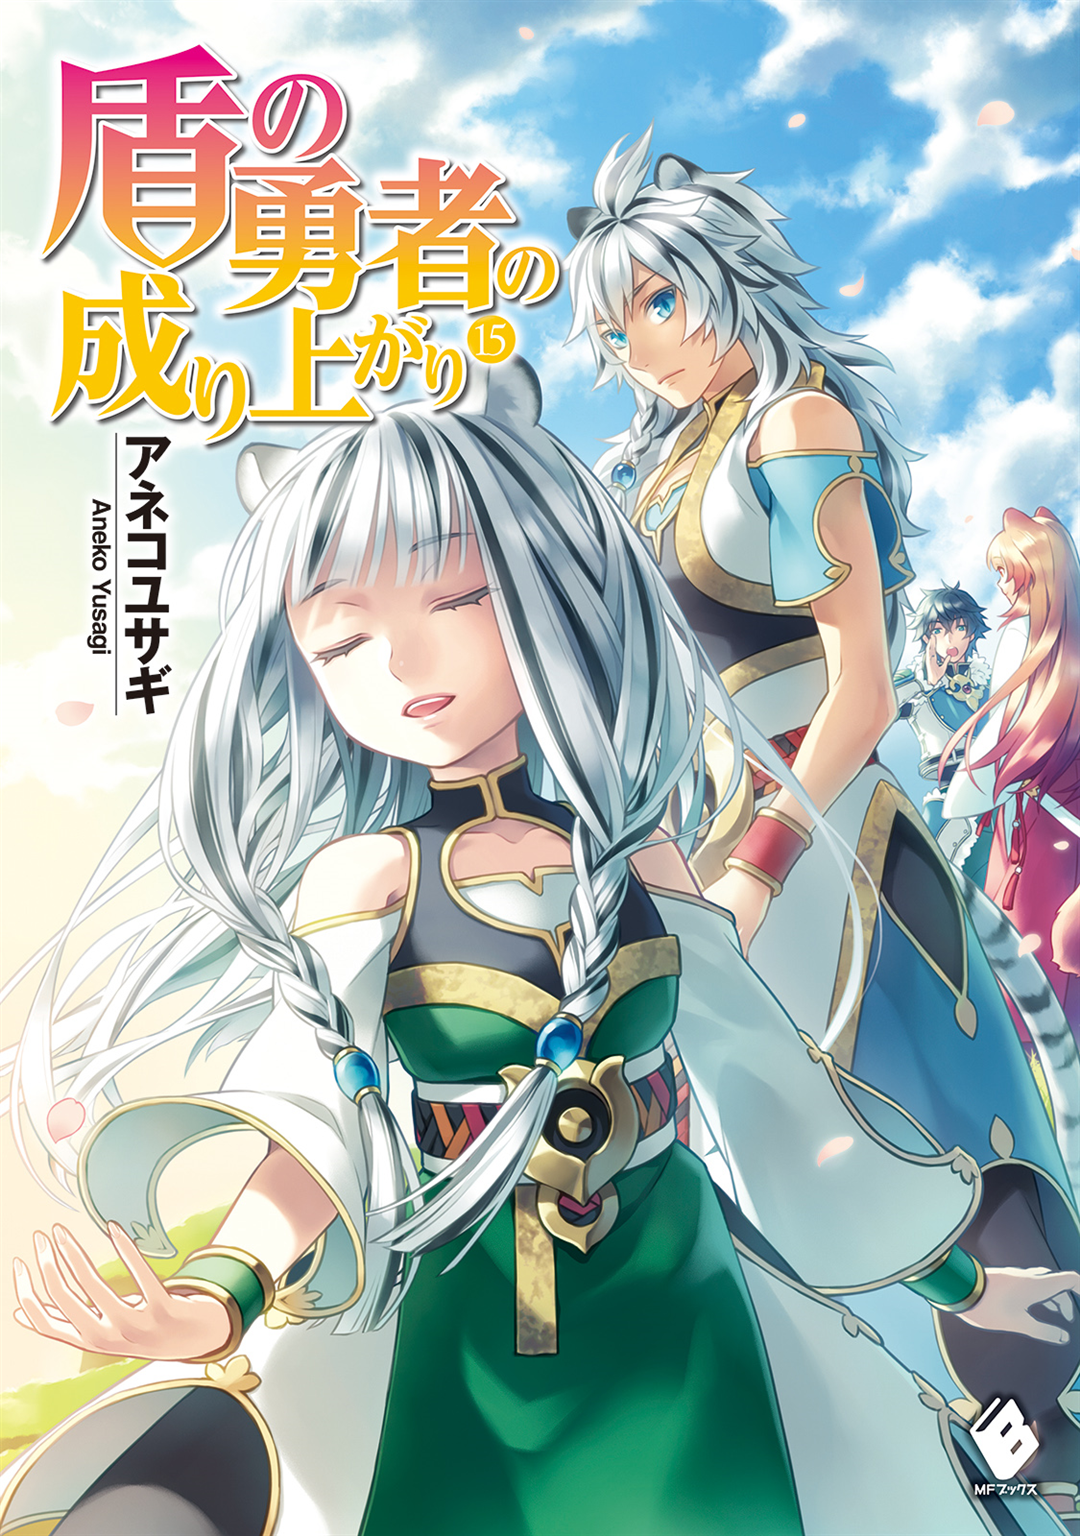 Light Novel Volume 15 | The Rising of the Shield Hero Wiki | Fandom